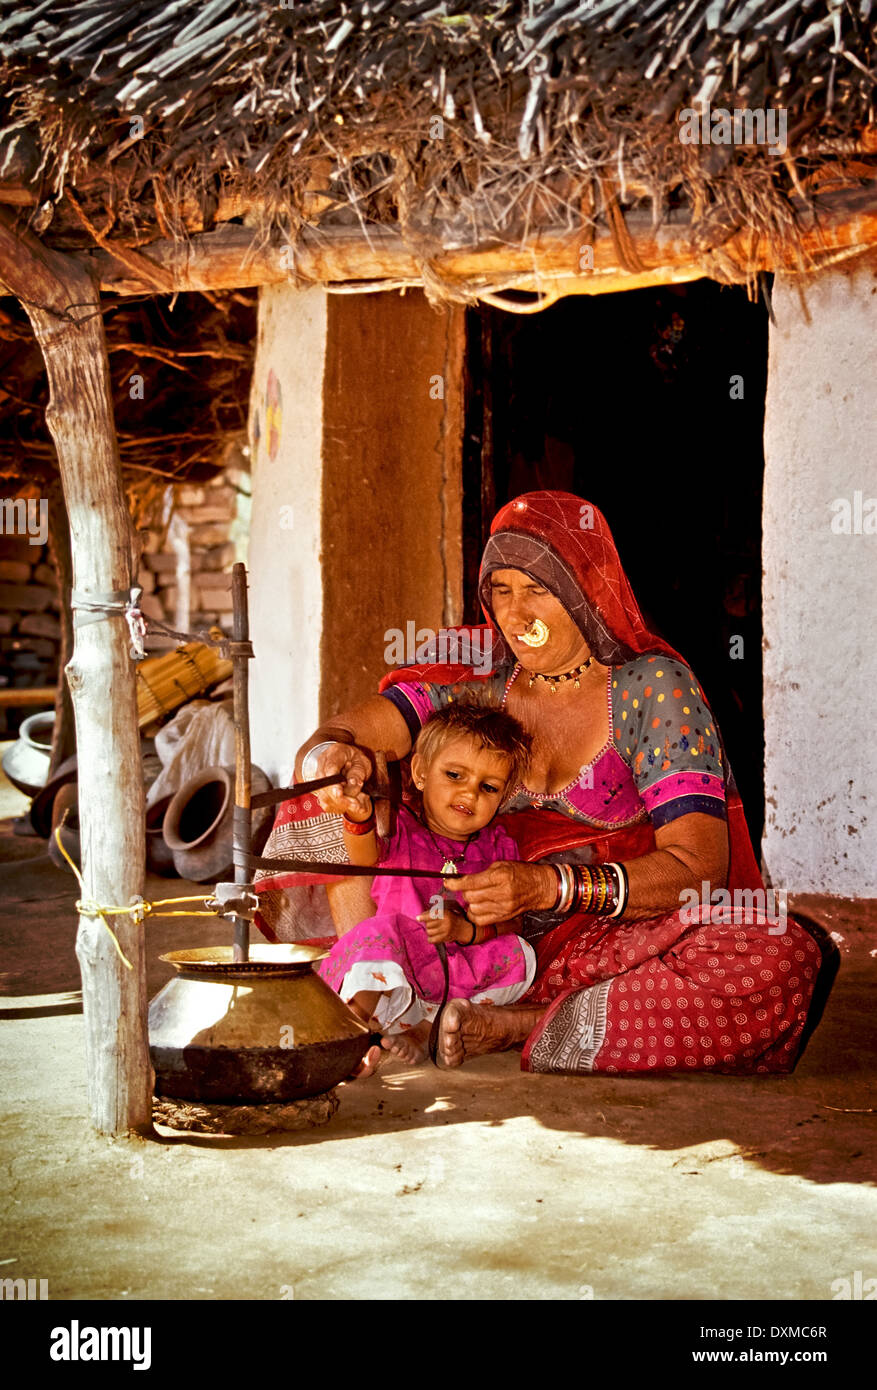 Indische Frau hält ein Kind und Mahlen von Mehl in einem Dorf in der Nähe von Jodhpur, Indien. Digital manipulierte Bild. Stockfoto